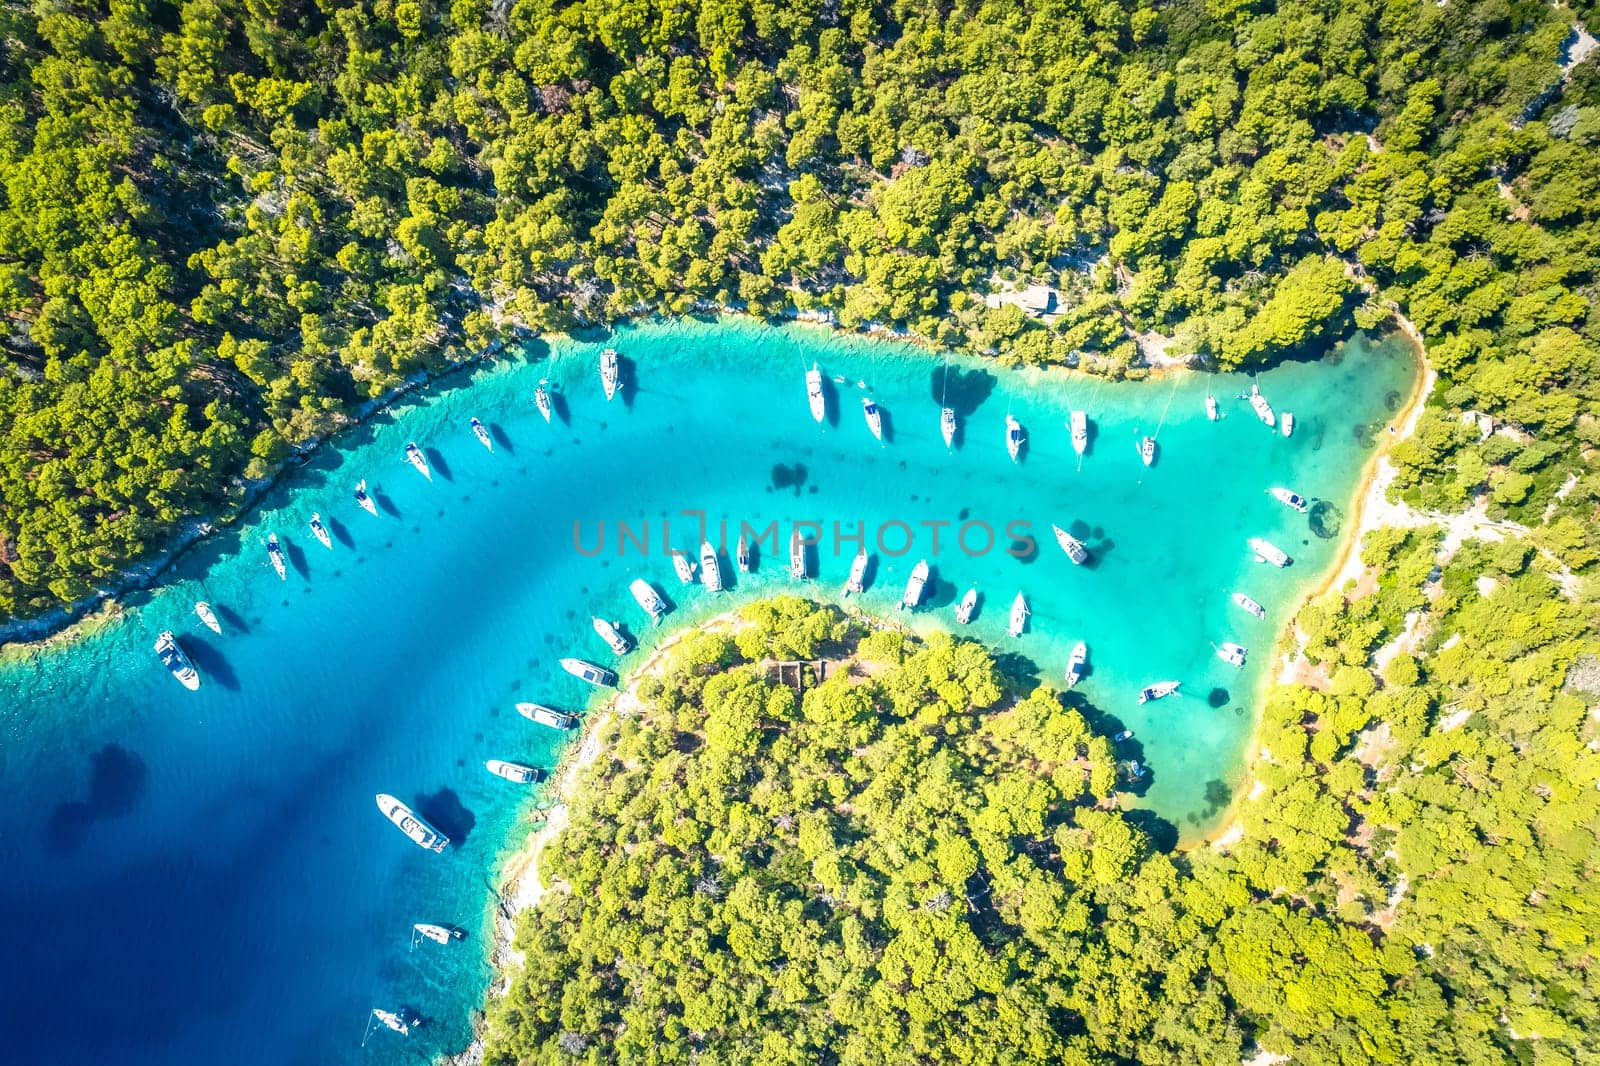 Turquoise sailing safe bay on Mali Losinj island aerial view, archipelago of Croatia